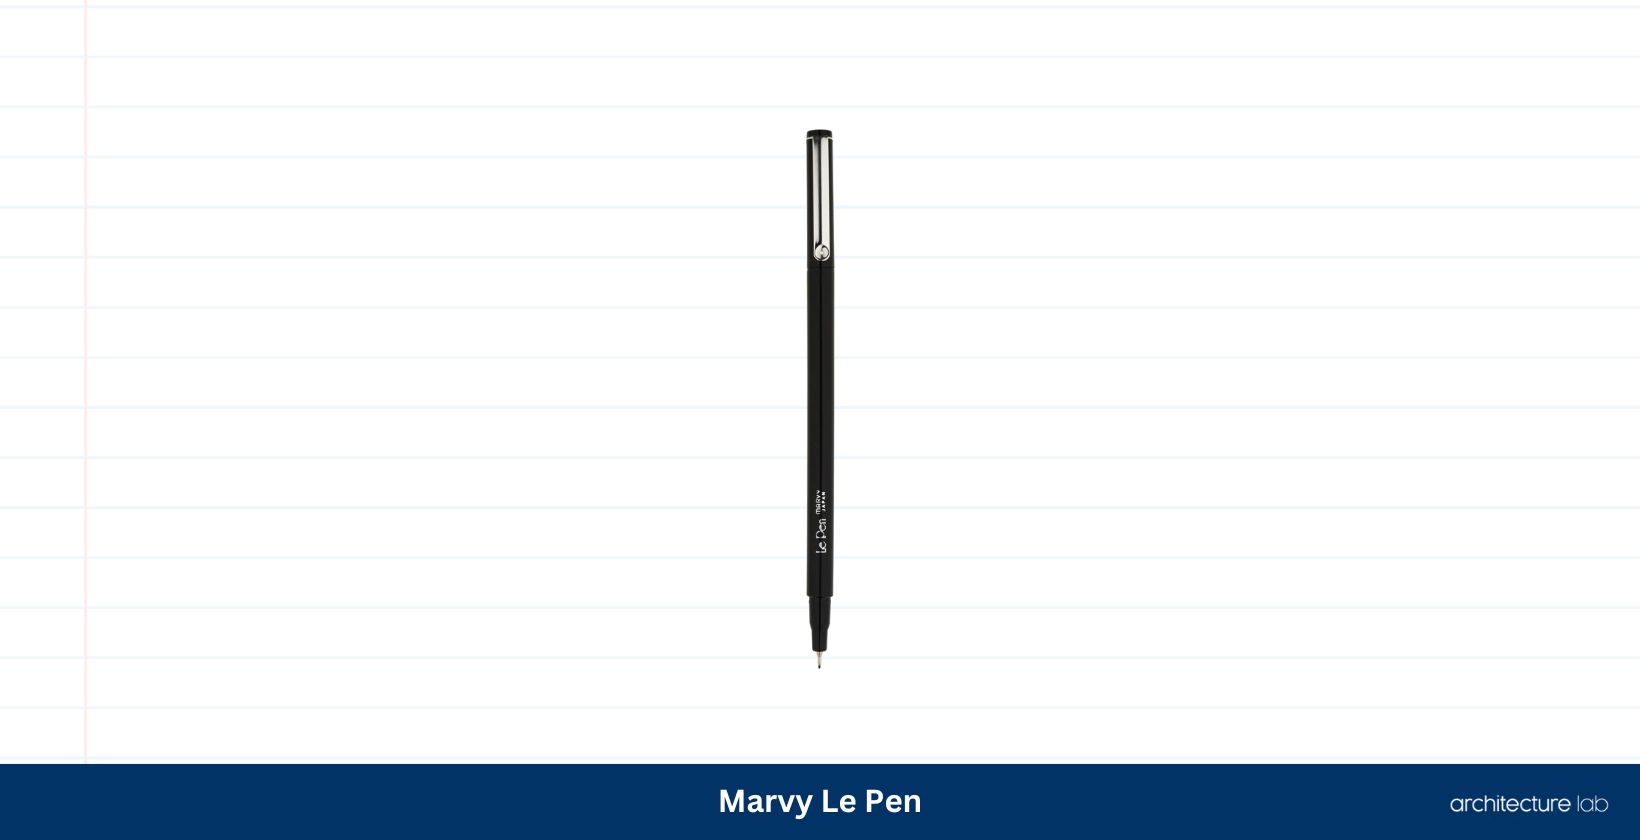 Marvy le pen